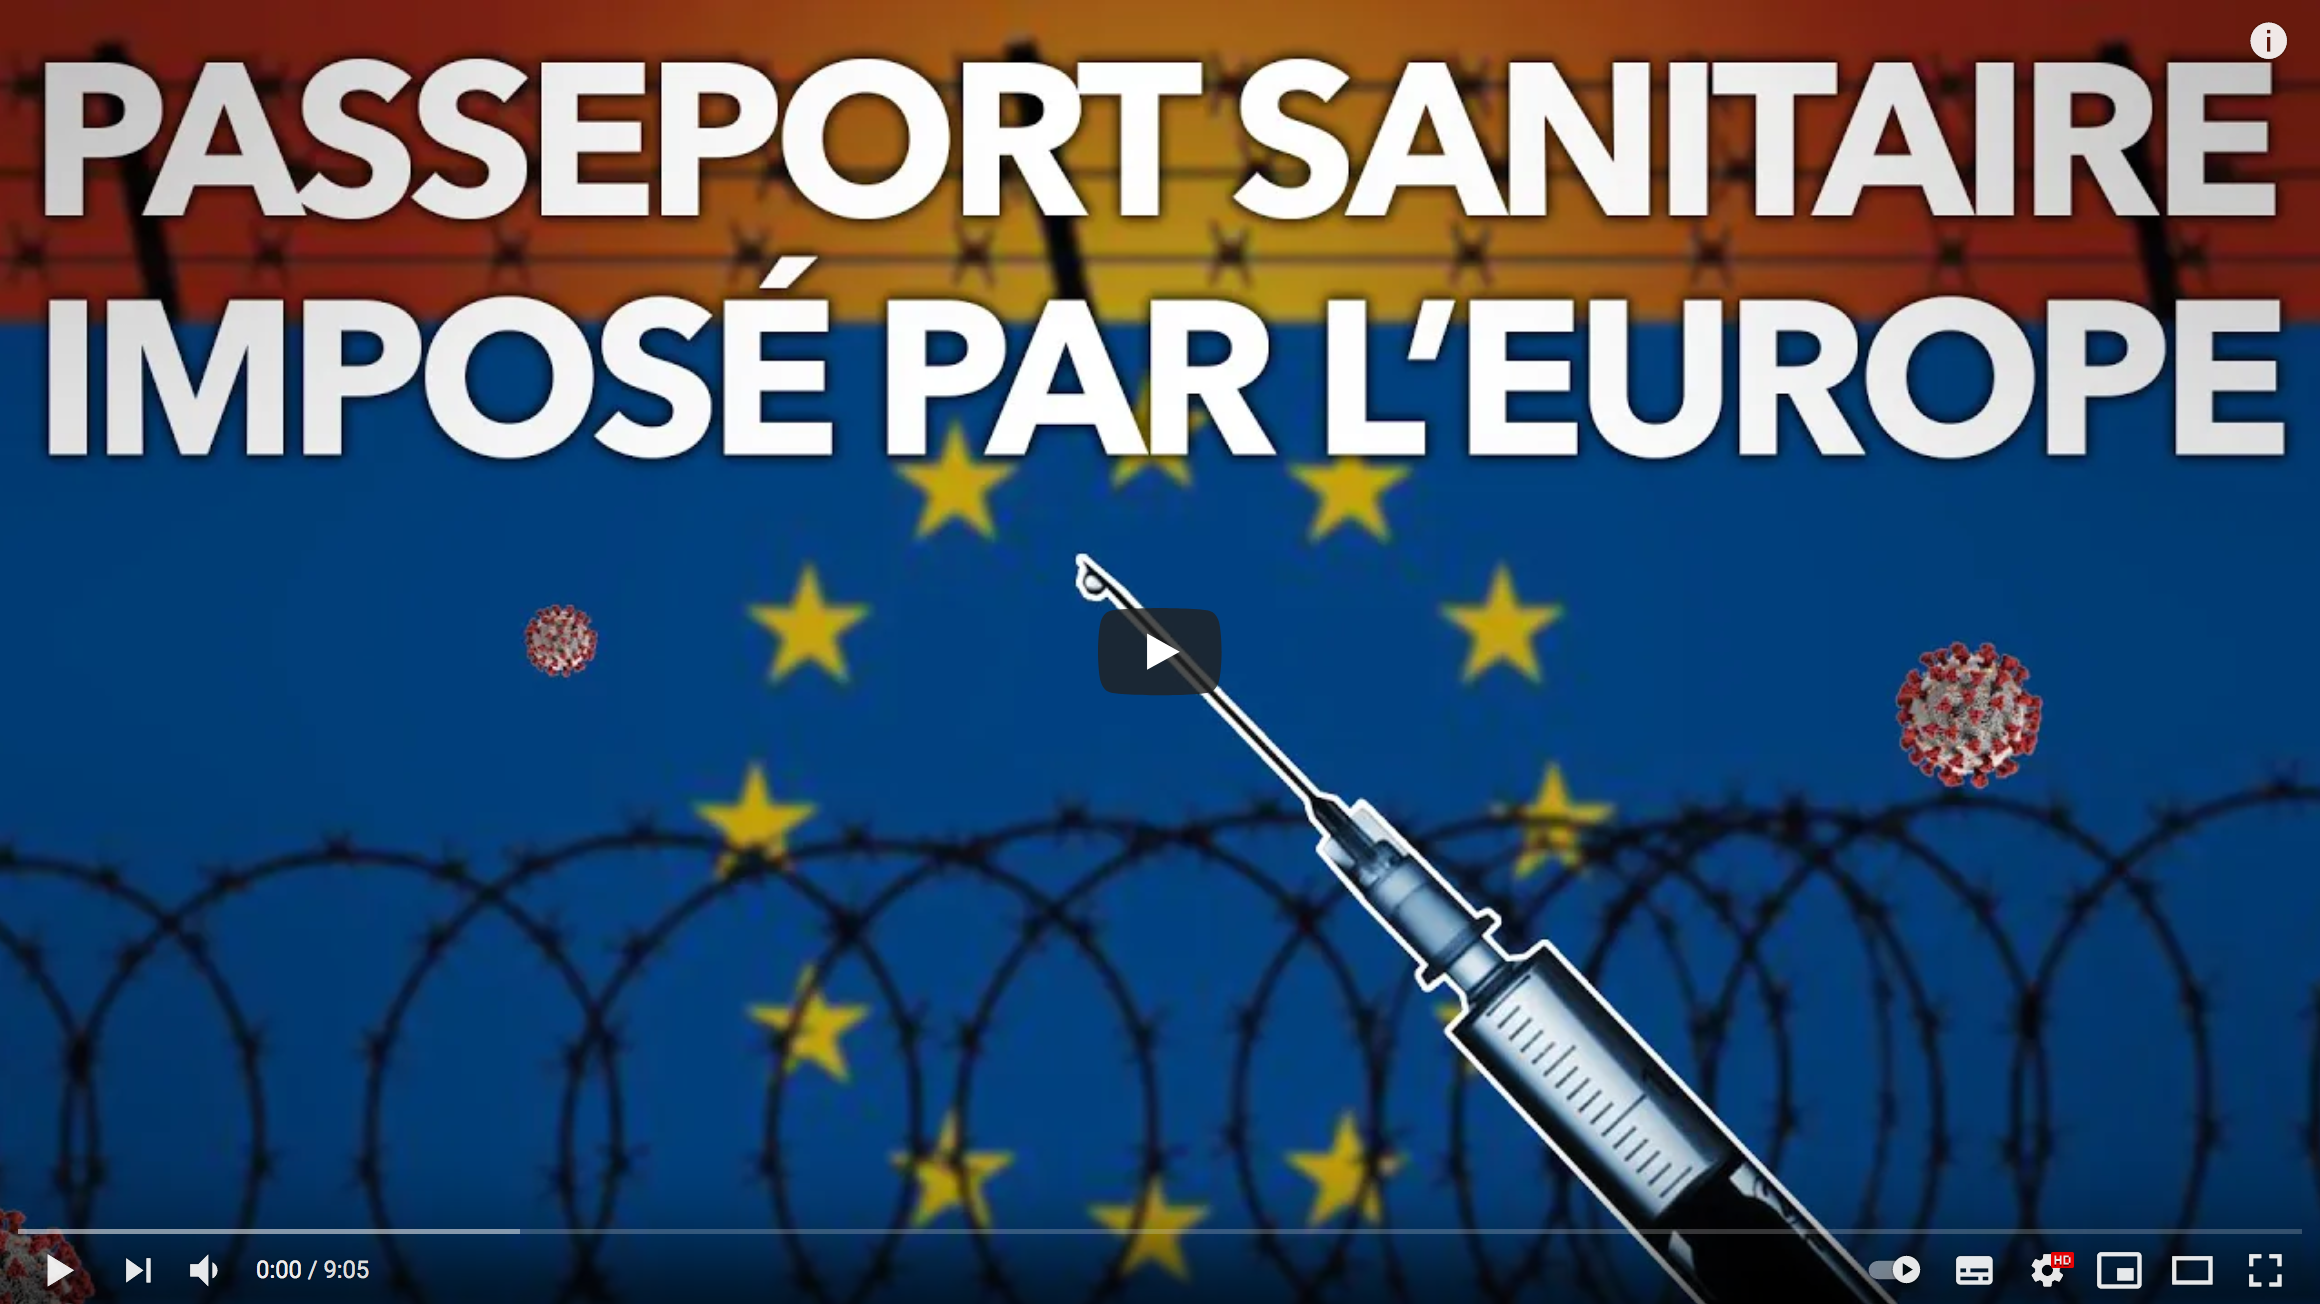 L’Union européenne veut imposer le Passeport sanitaire (Florian Philippot)